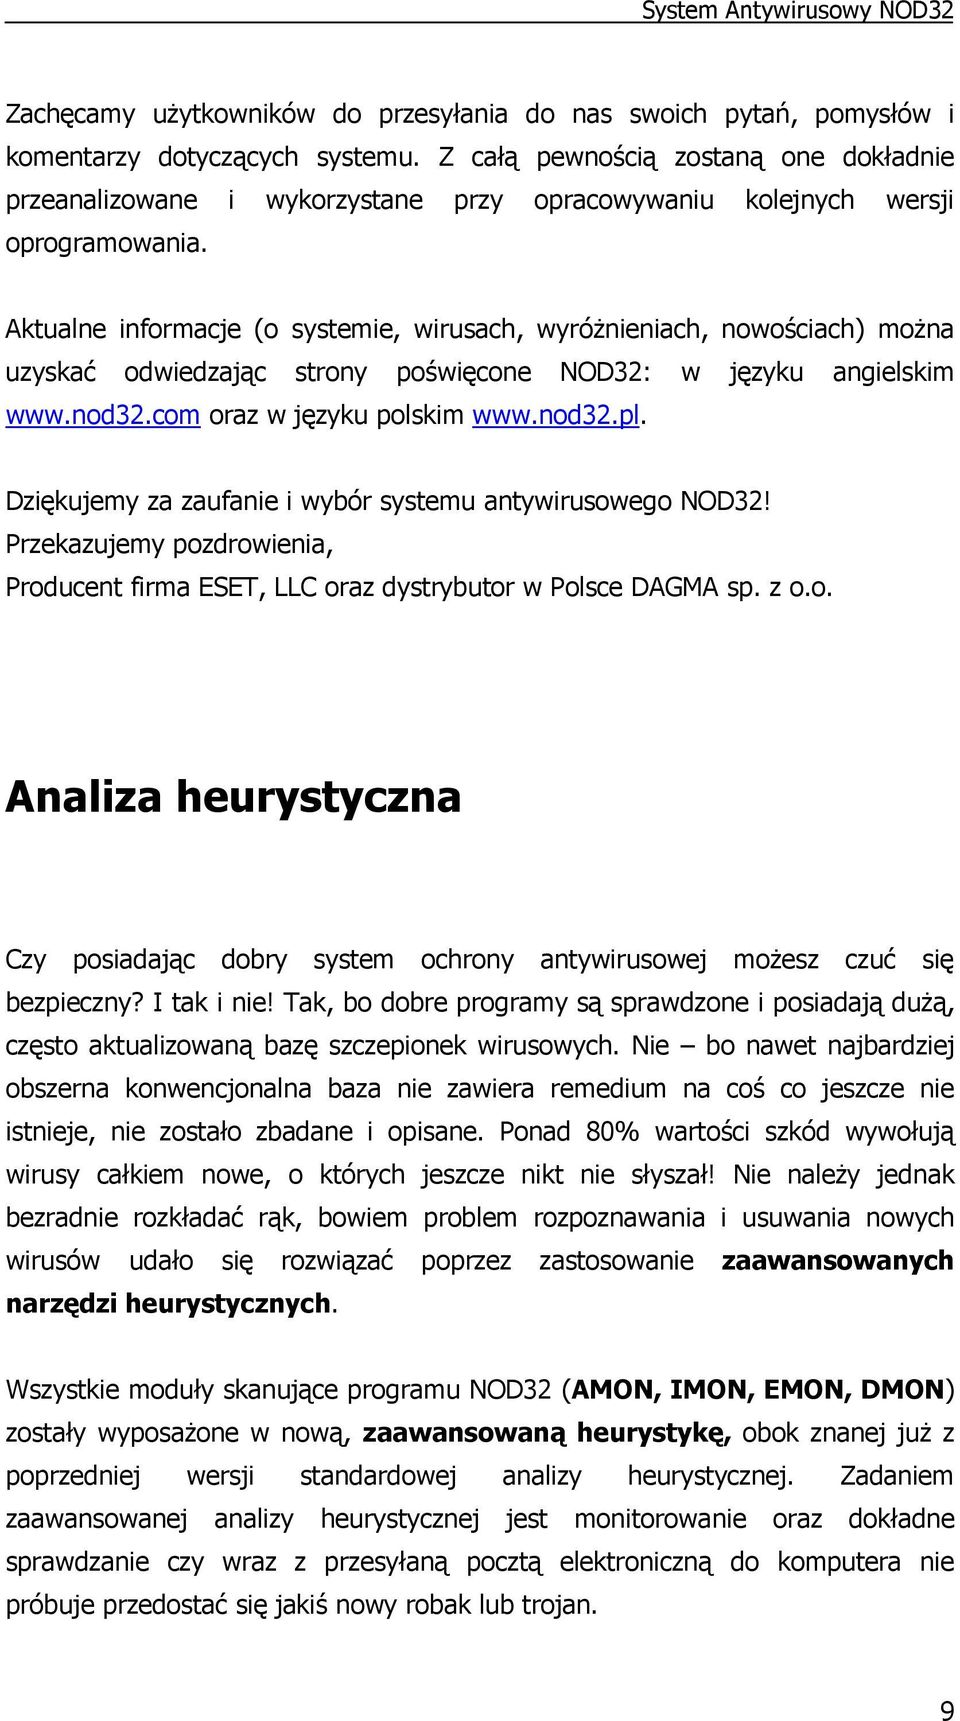 Aktualne informacje (o systemie, wirusach, wyróŝnieniach, nowościach) moŝna uzyskać odwiedzając strony poświęcone NOD32: w języku angielskim www.nod32.com oraz w języku polskim www.nod32.pl.